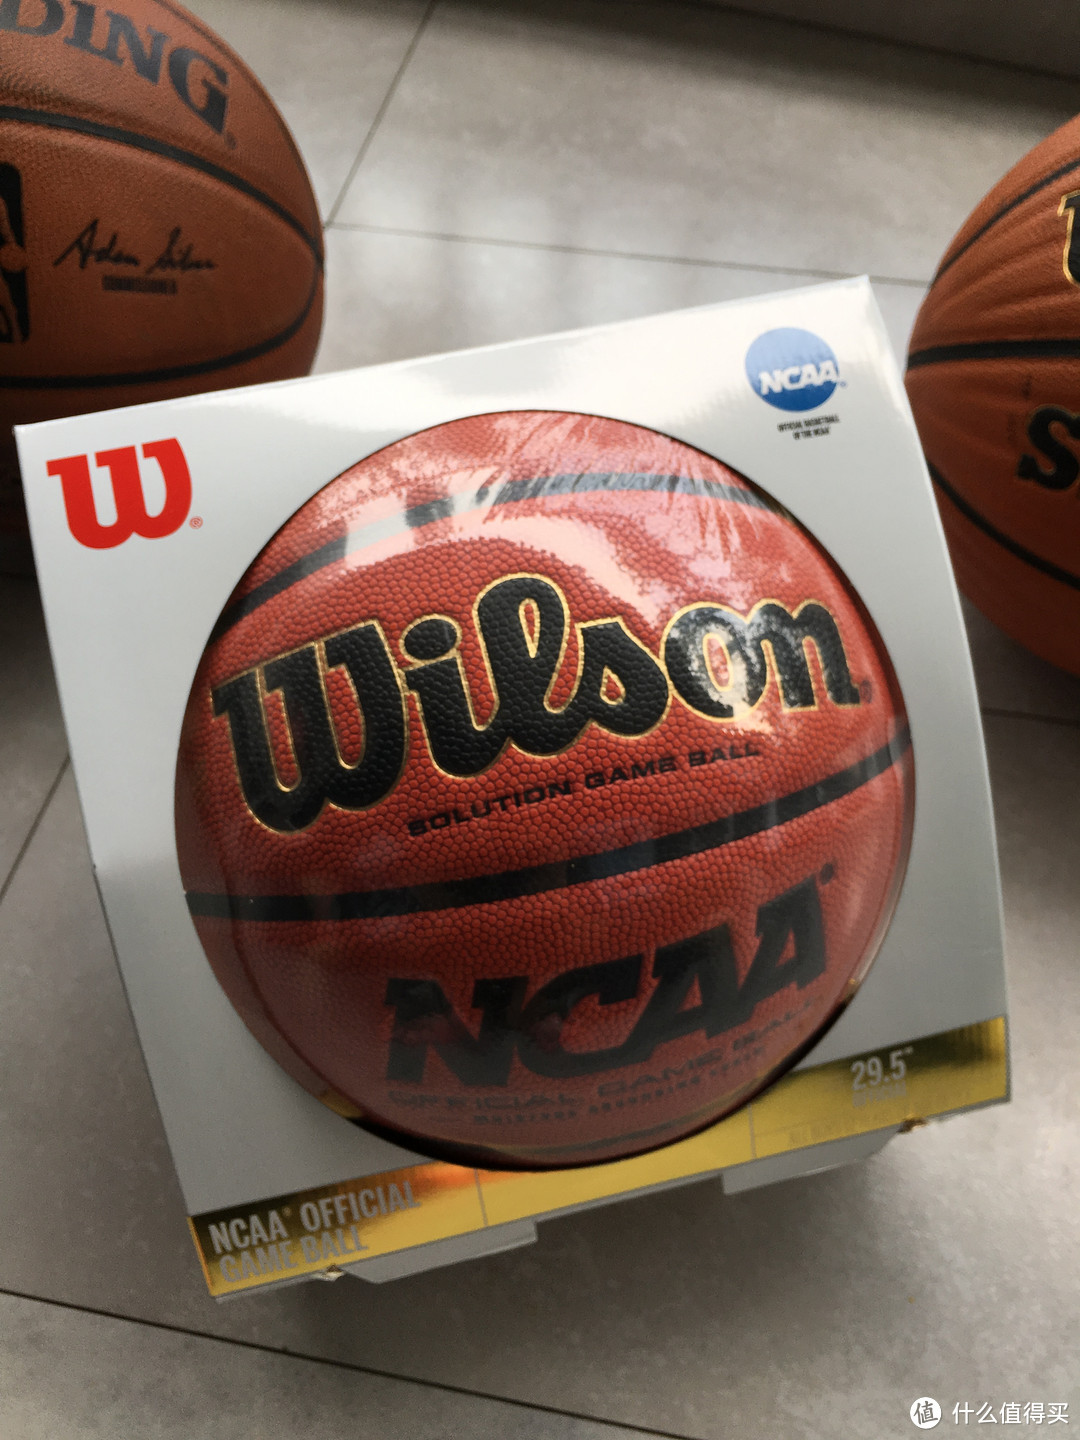 好了 这个是威尔胜最贵的篮球  solution  超纤吸湿  手感很棒 但是后来发现 他家的美国高中神器evolution手感比他还要好  是来自于日本的超纤吸湿 很像废纸的那种手感